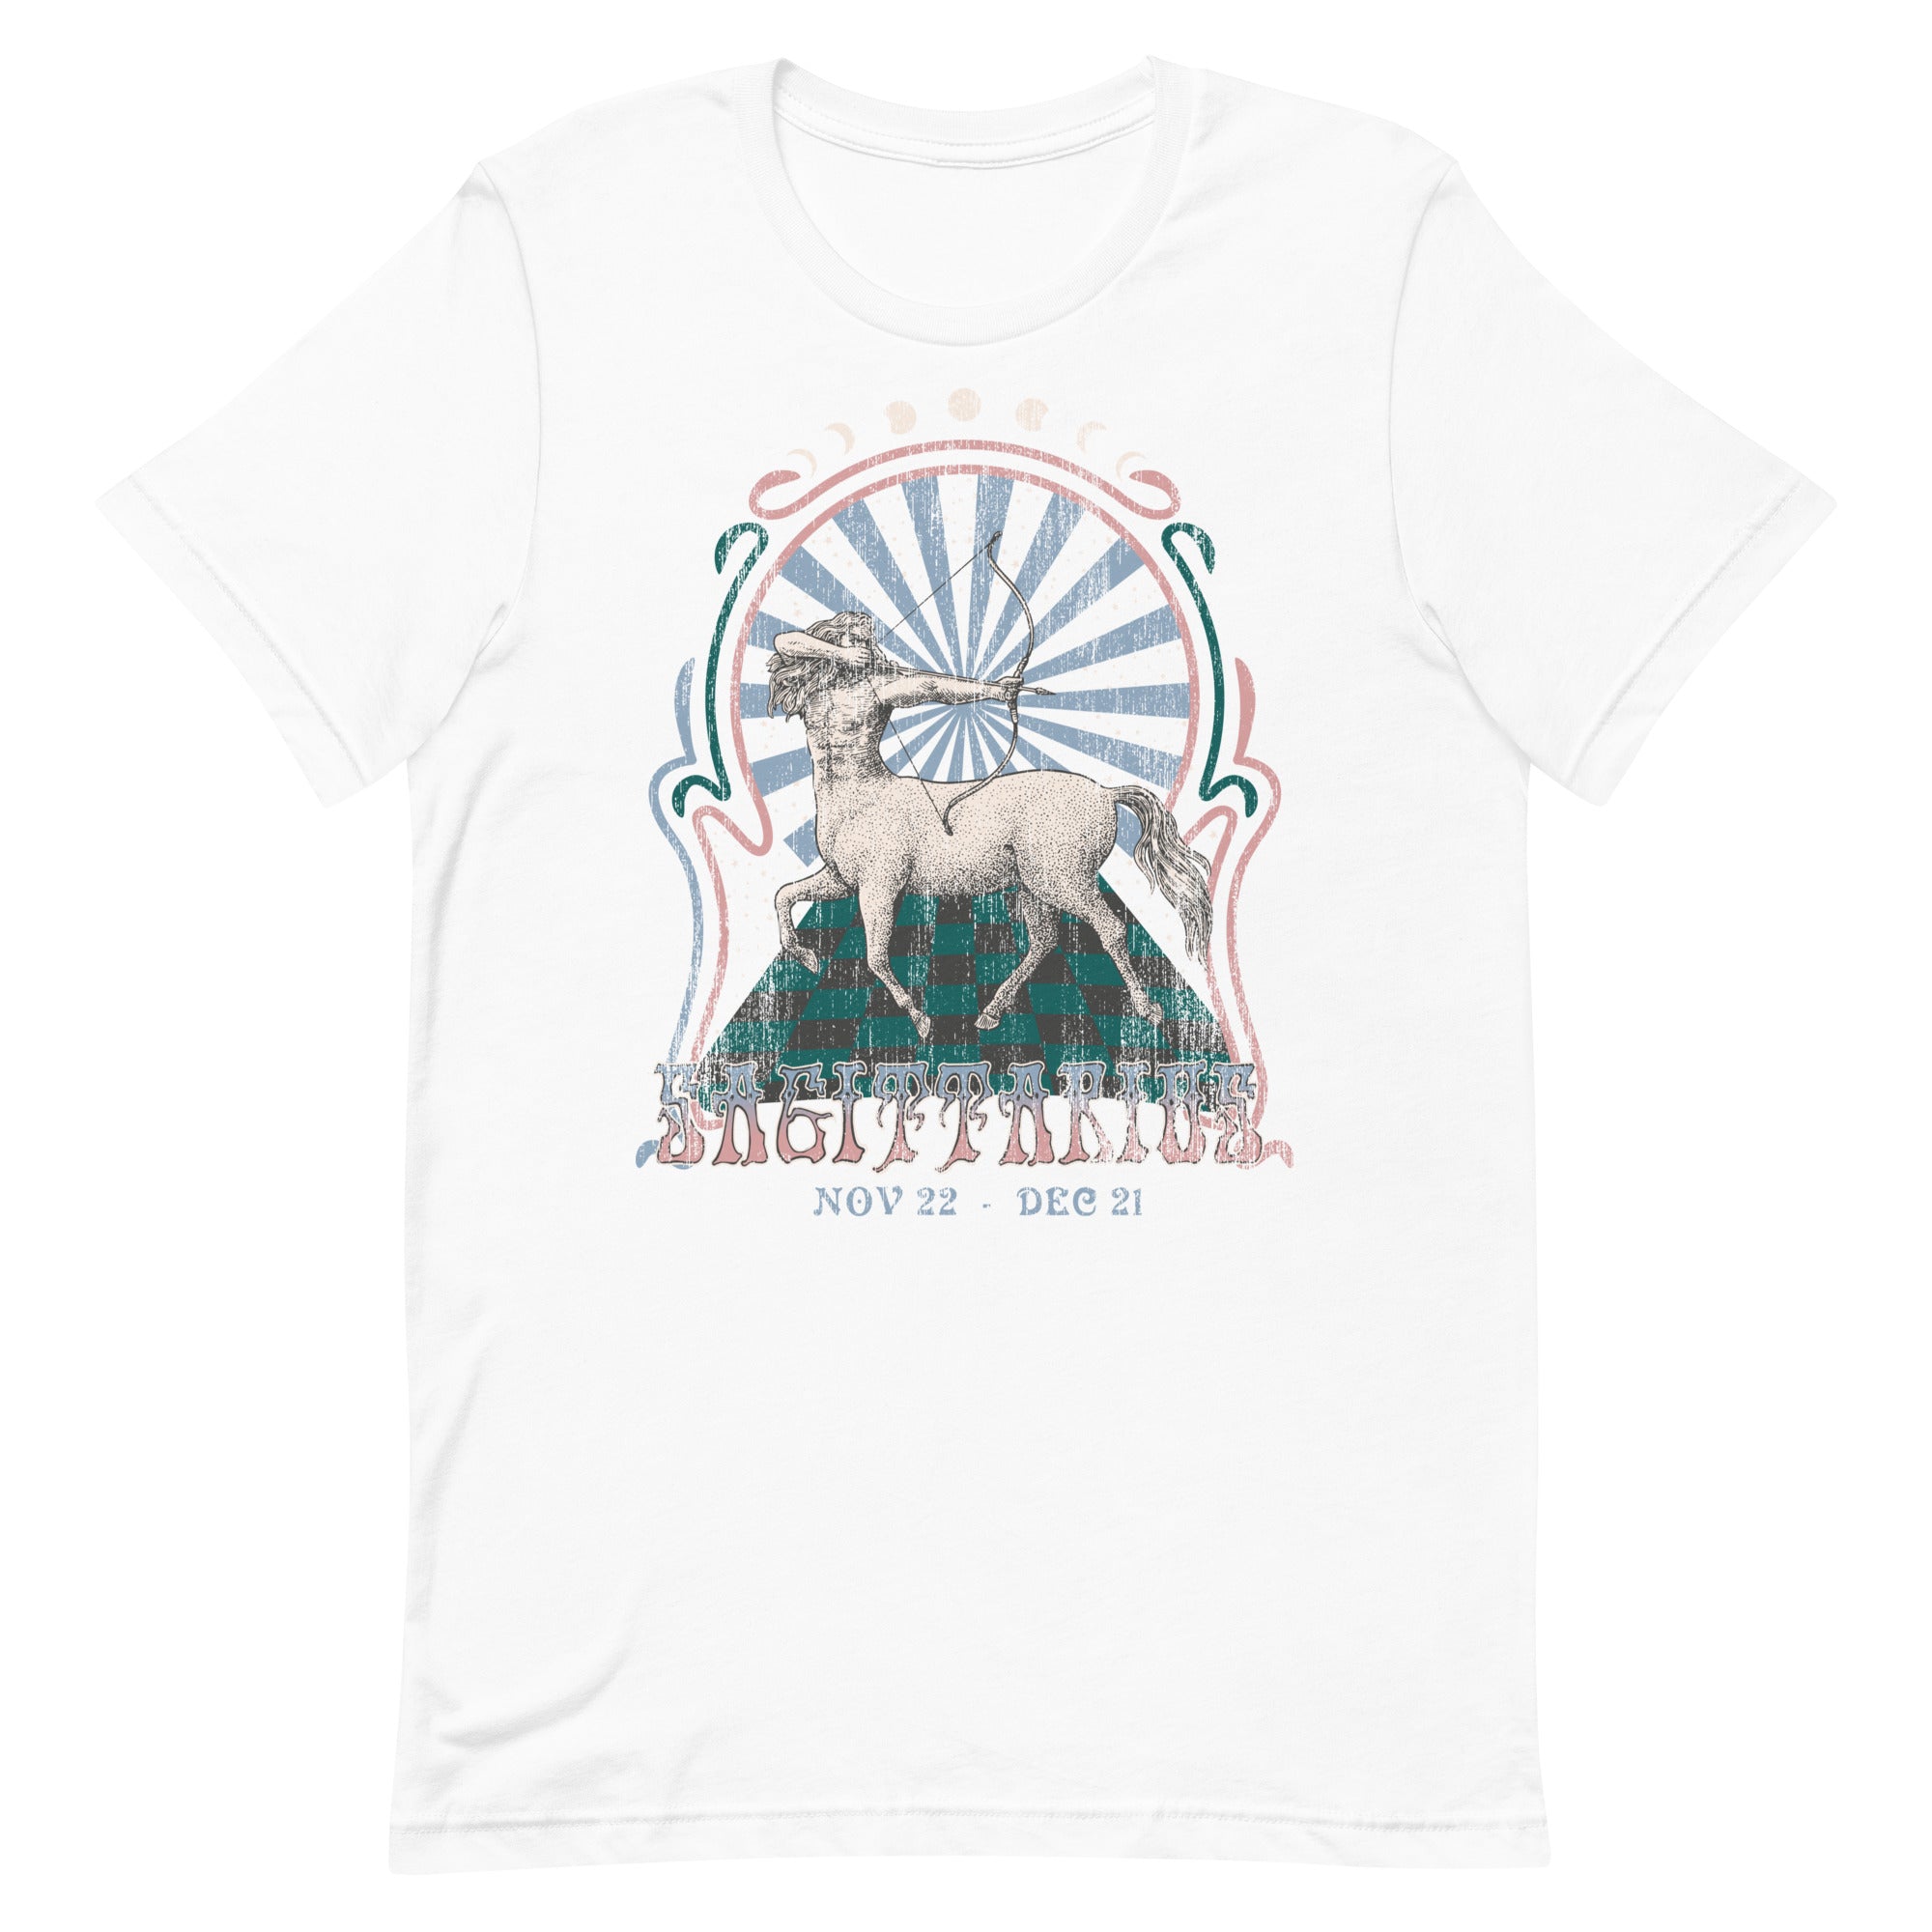 Sagittarius Band T-Shirt Inspired Graphic Tee